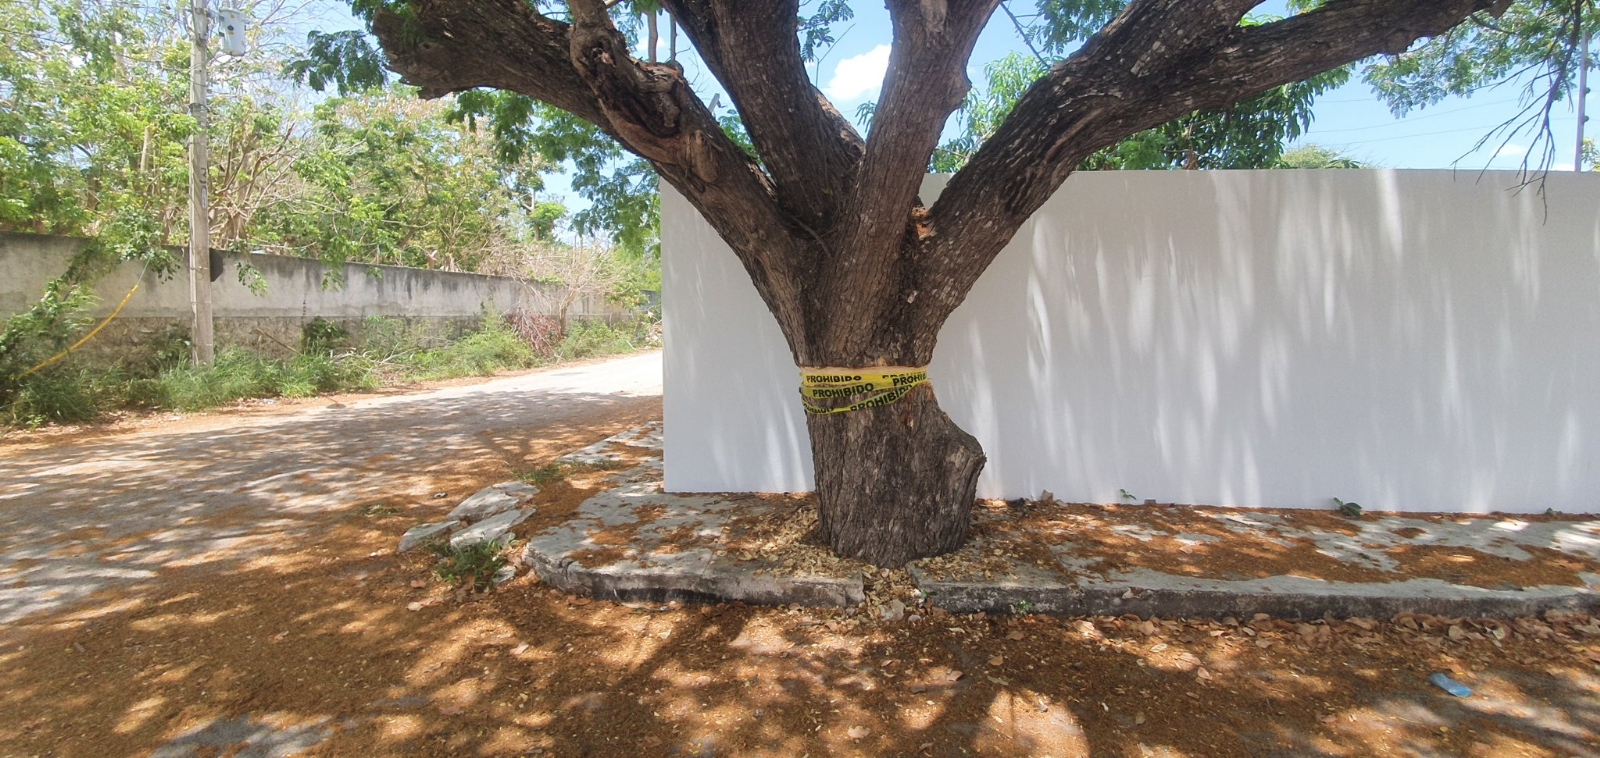 Reportan intento de ecocidio: dañan el tronco de un árbol al norte de Mérida